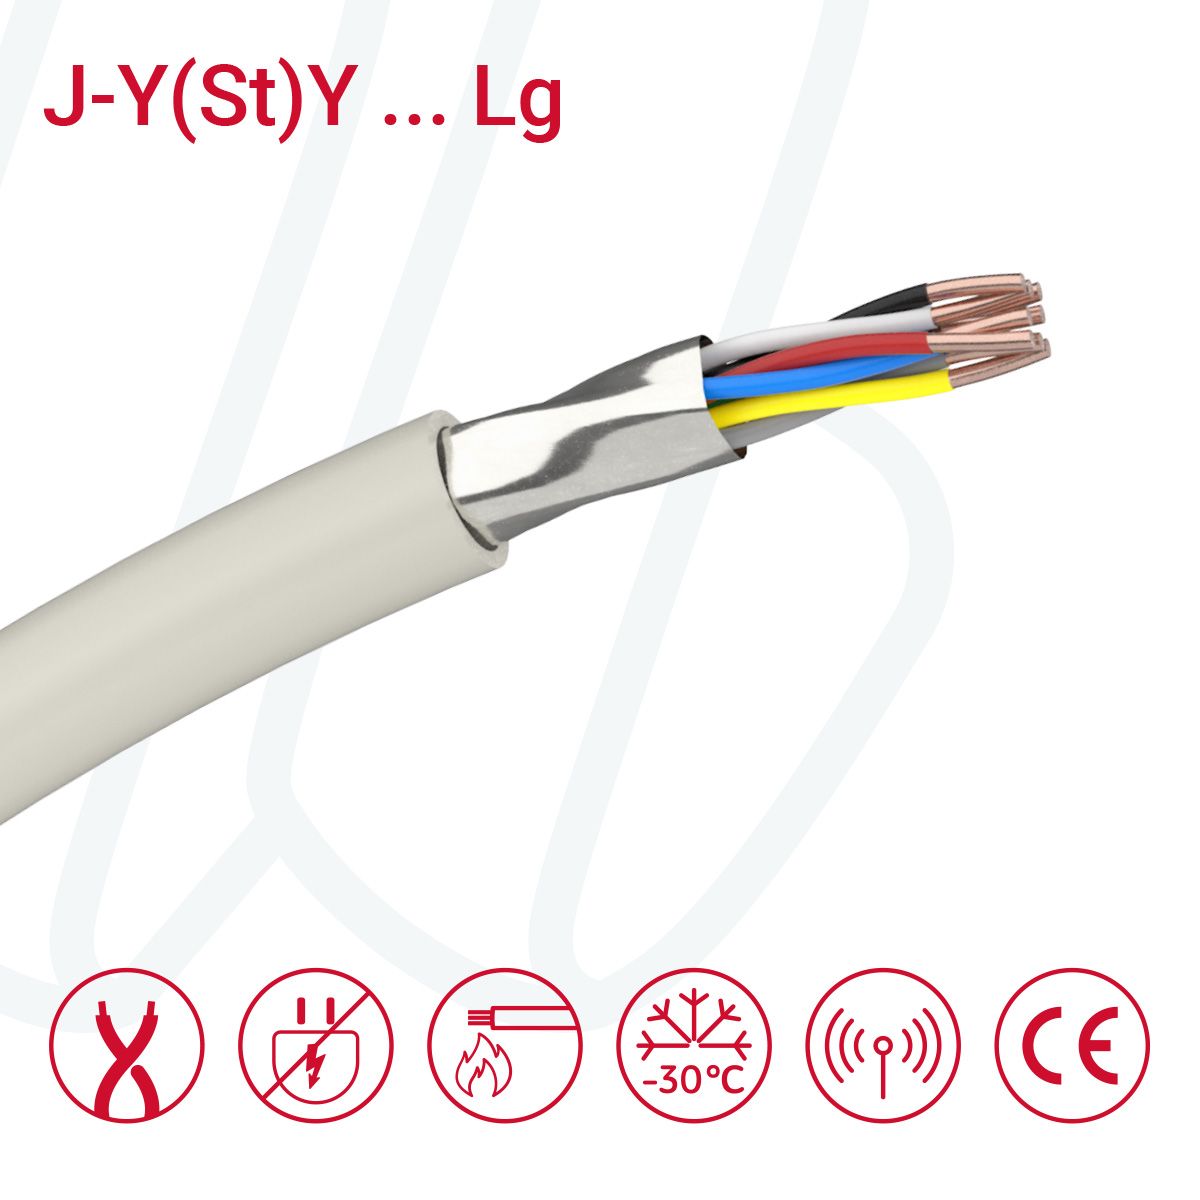 Кабель J-Y(St)Y…LG 03X2X0.6 (0.28mm²) сірий, 06, 0.28